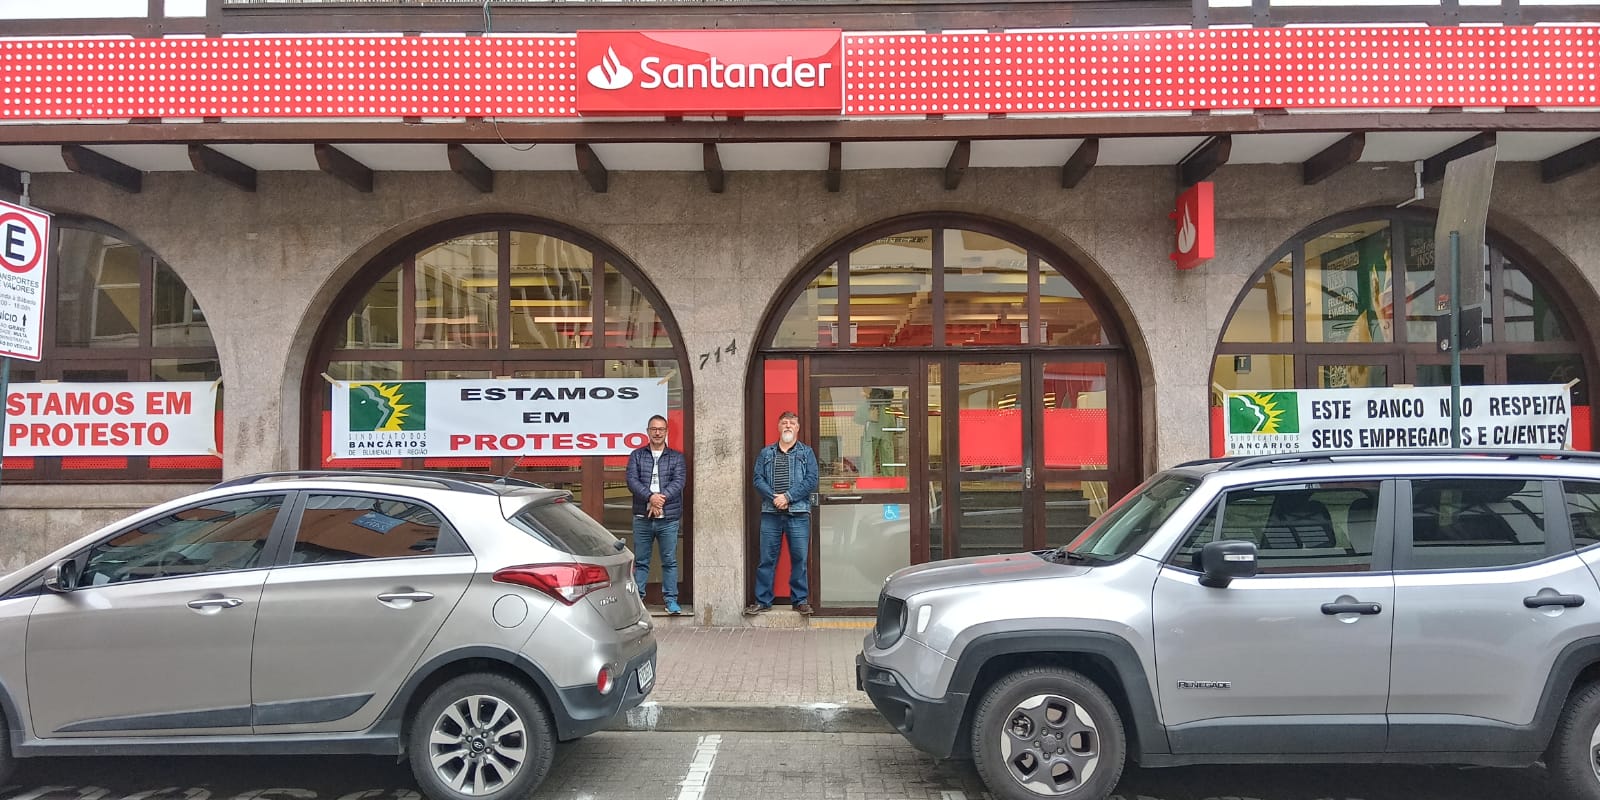 Protestos contra o Santander 27Jul (1)